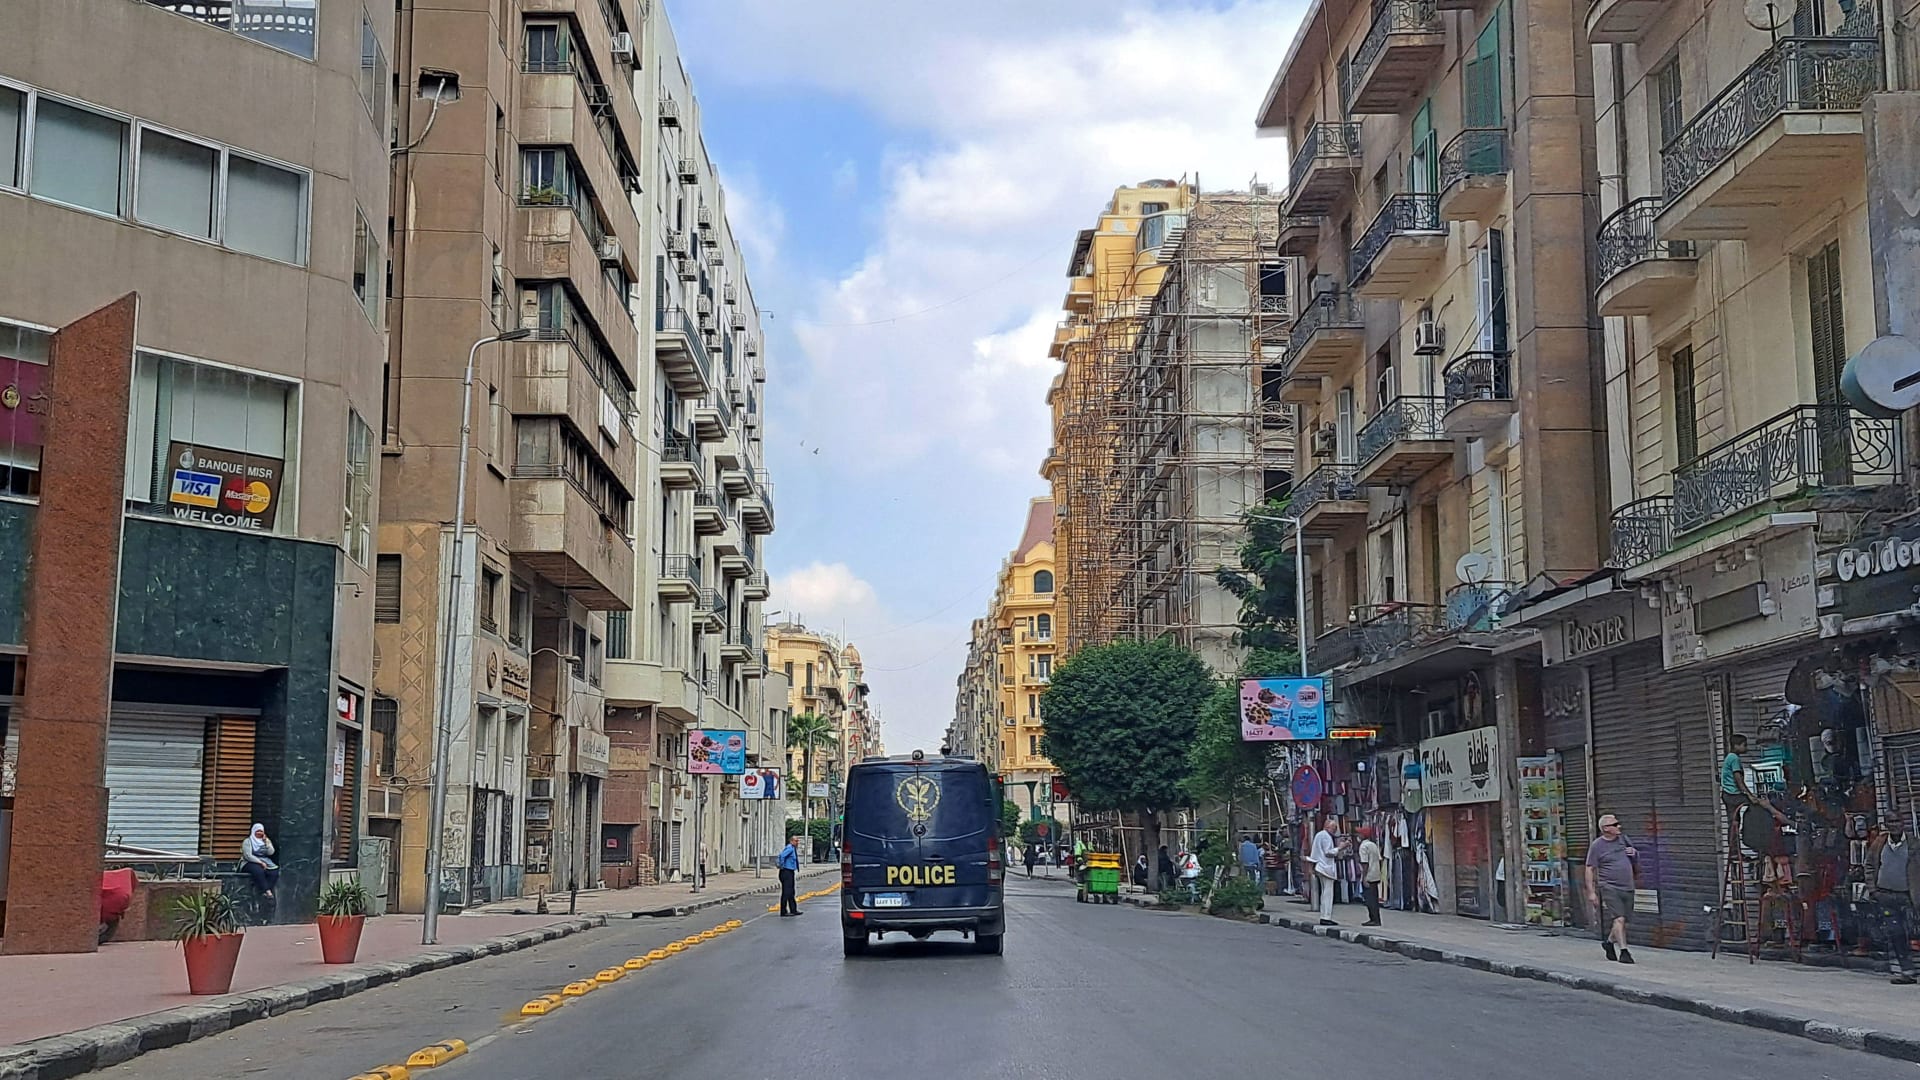 صورة تعبيرية لعربة شرطة في العاصمة المصرية، القاهرة